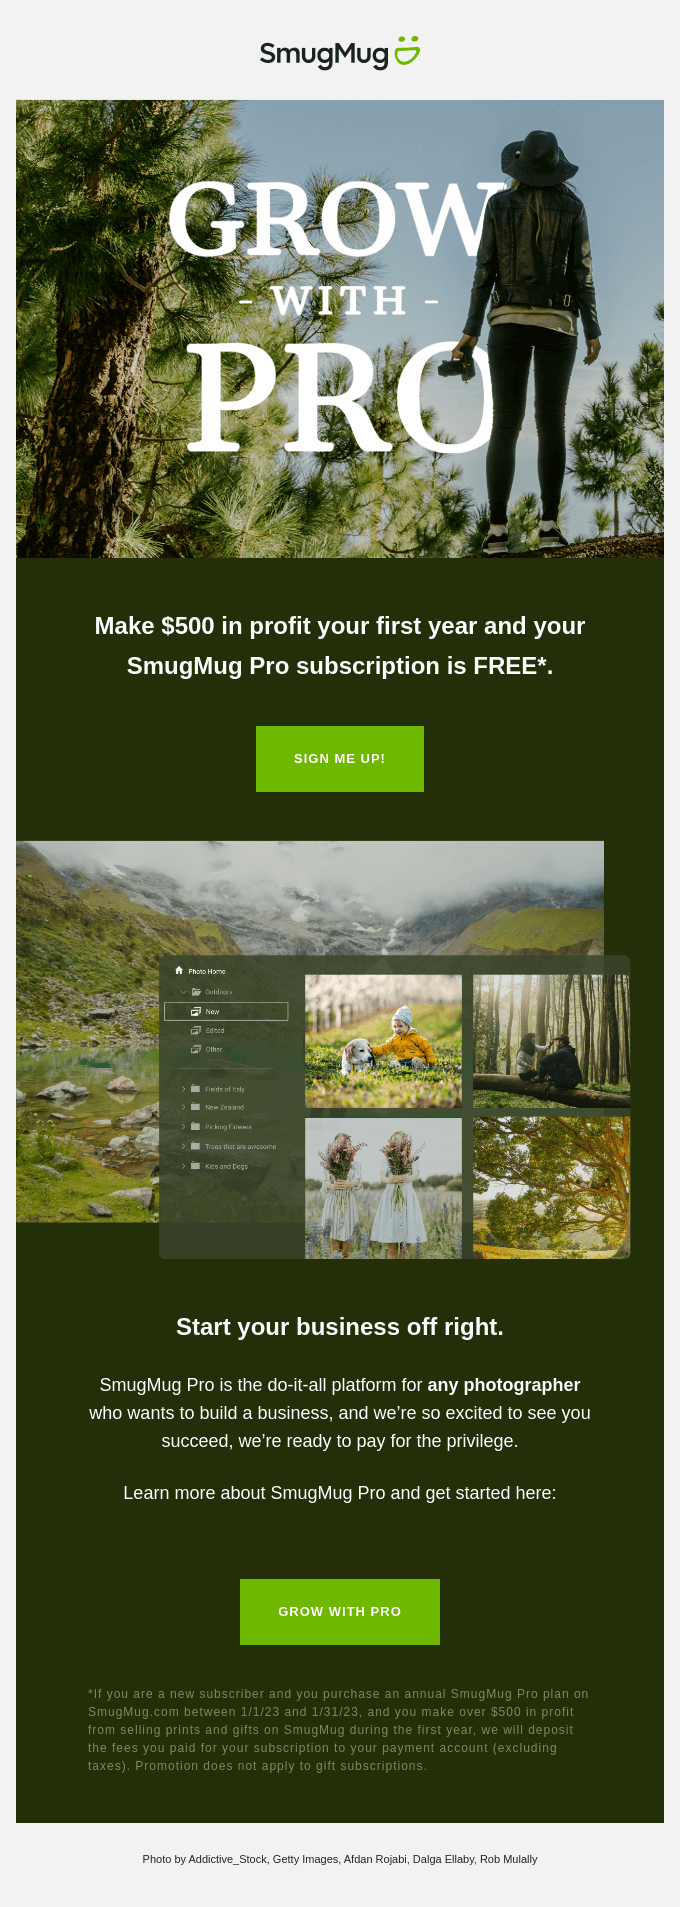 Get SmugMug Pro for FREE.